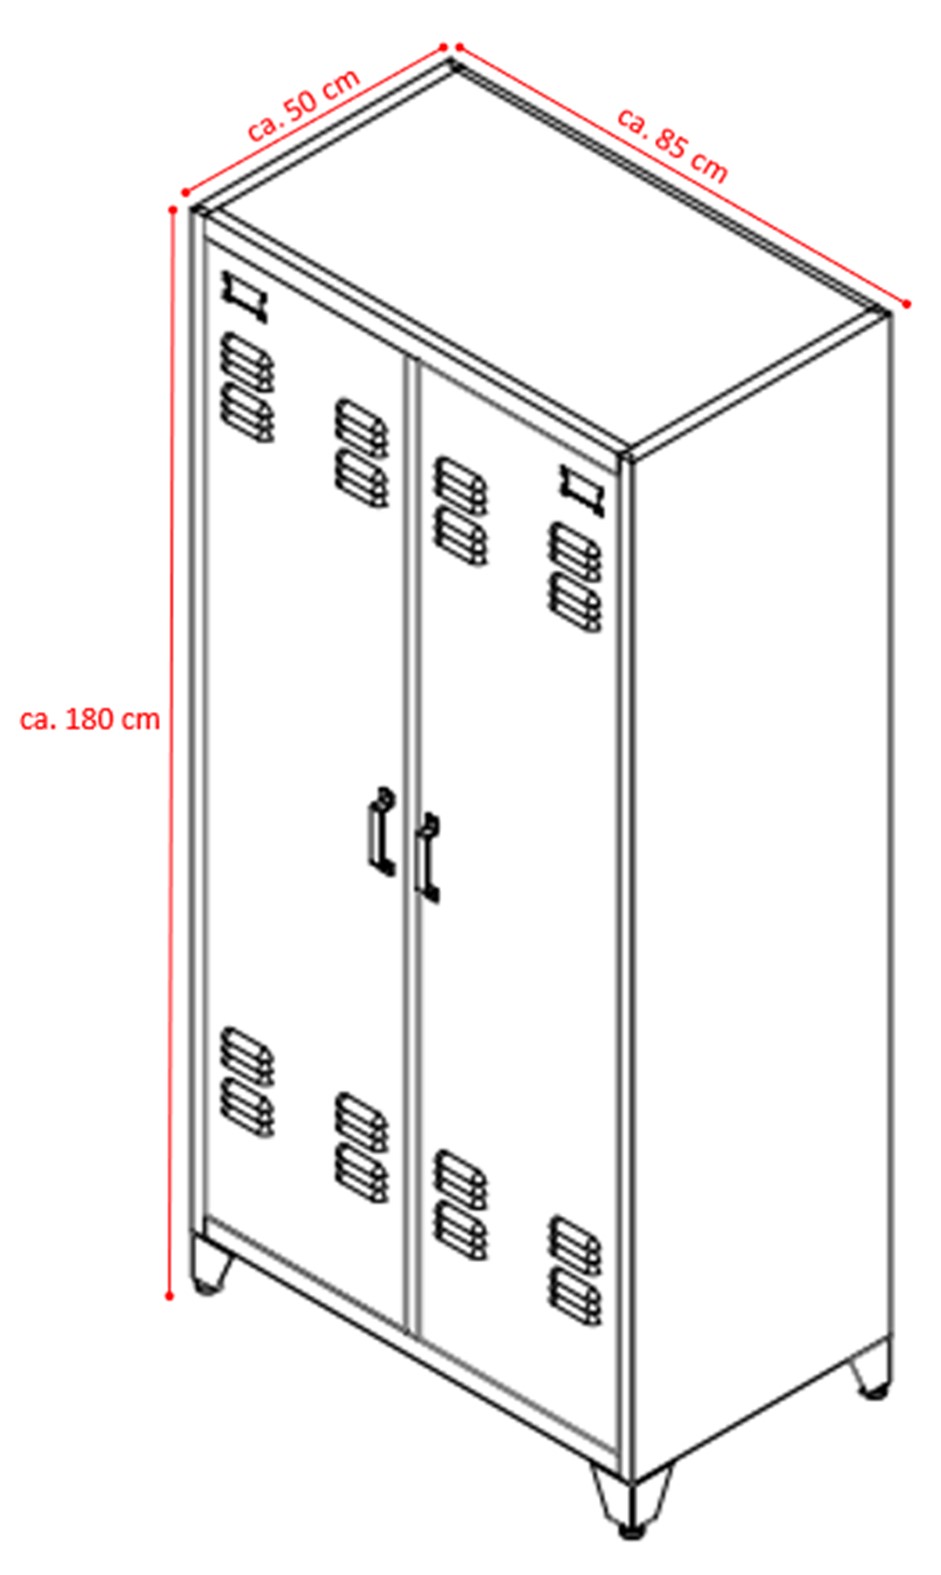 Steel Office-Cabinet ODESSA anthracite/dark-gray locker